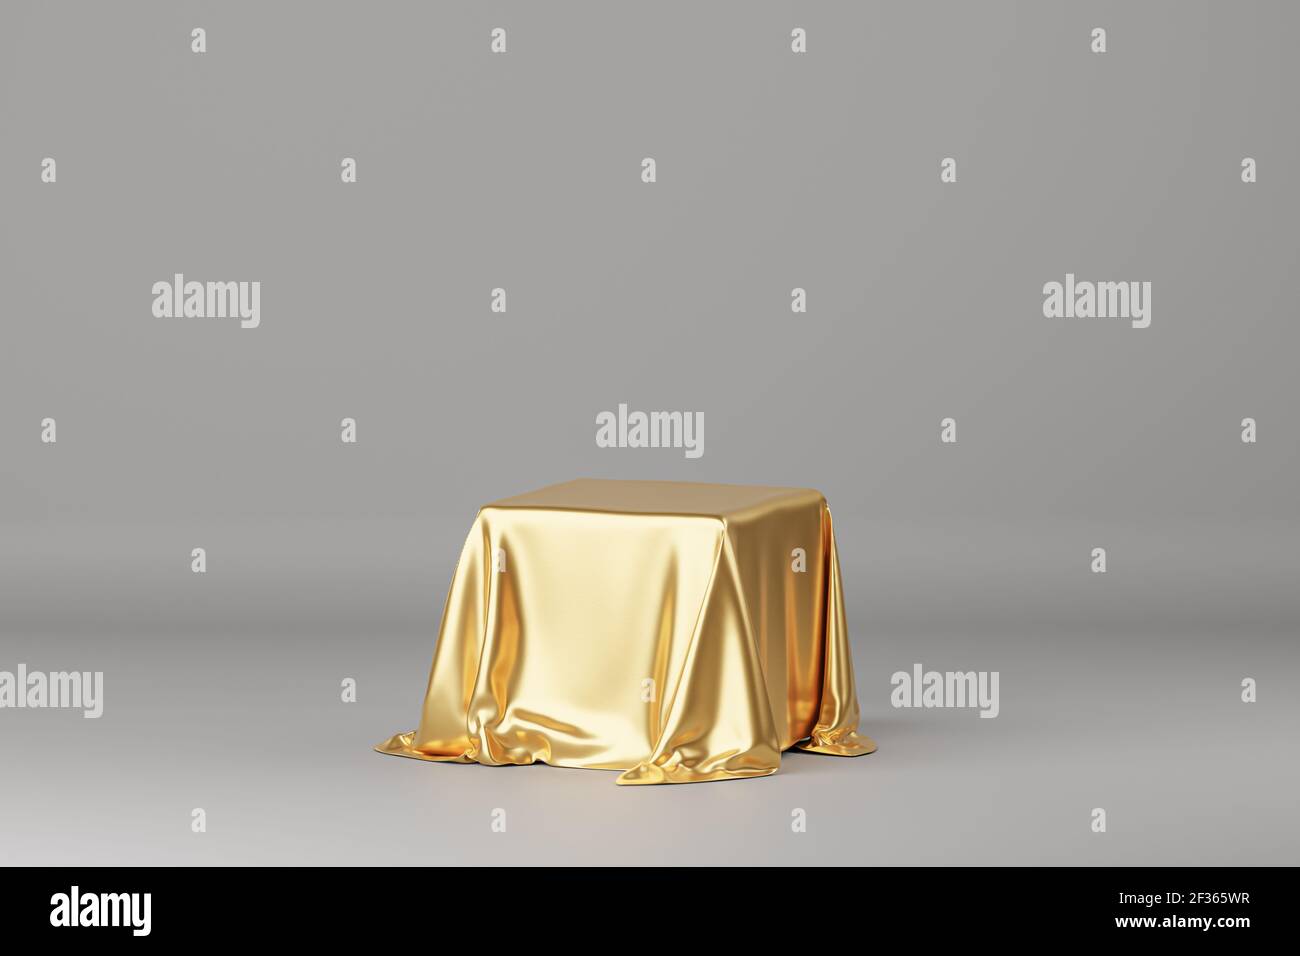 Tissu de luxe doré placé sur le podium ou le piédestal pour les produits ou la publicité. Rendu 3D. Arrière-plan gris. Banque D'Images